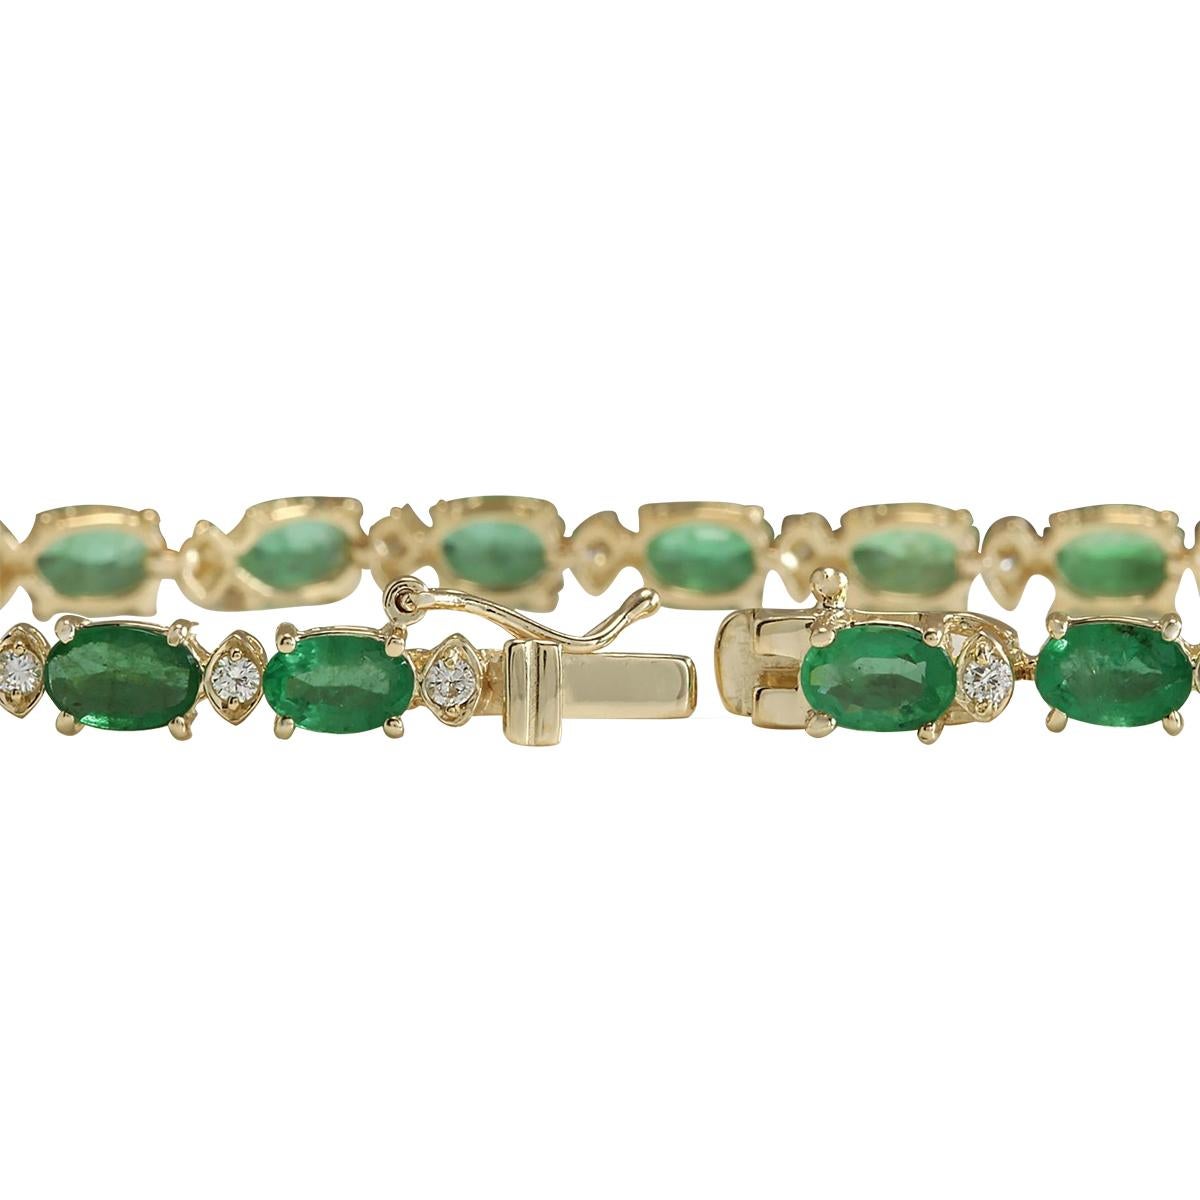 8.86 Carat Natural Emerald 14 Karat Yellow Gold Diamond Bracelet
Estampillé : Or jaune 14K
Poids total du bracelet : 8,5 grammes
Longueur du bracelet : 7 pouces
Largeur du bracelet : 4.00 mm
Le poids total des émeraudes naturelles est de 8.26